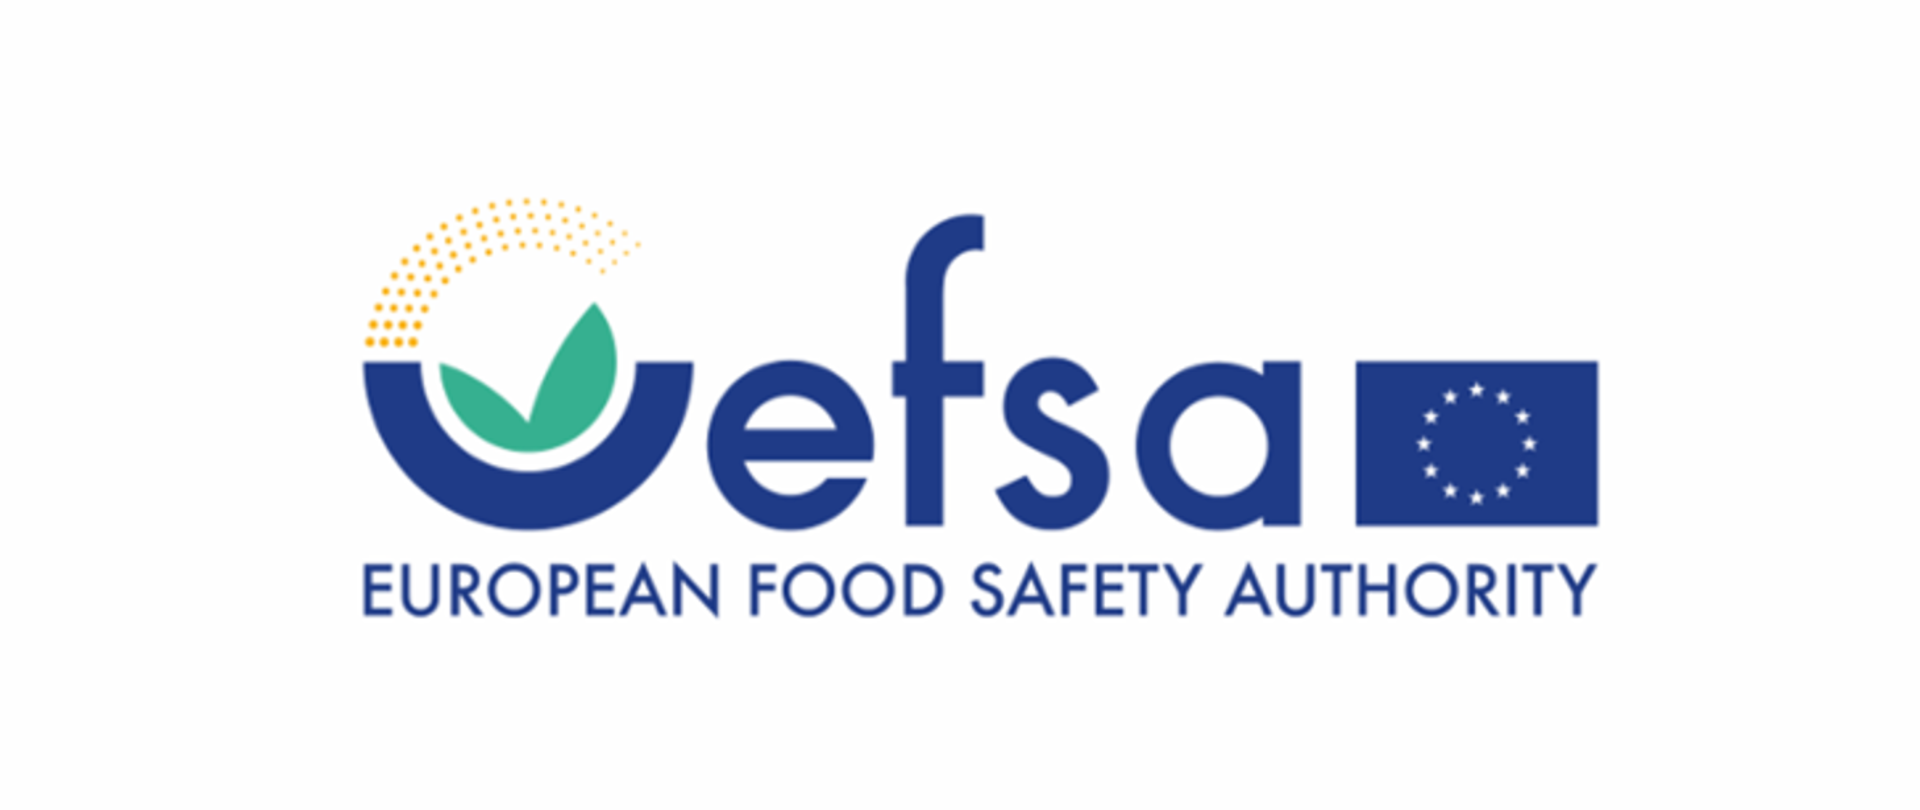 Obraz przedstawia logo EFSA European Food Safety Authority tj. Europejskiego Urzędu ds. Bezpieczeństwa Żywności – nazwa urzędu napisana jest granatową czcionką na białym tle, a w prawej części znajduje się flaga Unii Europejskiej, tj. okrąg z 12 gwiazdek na granatowym tle